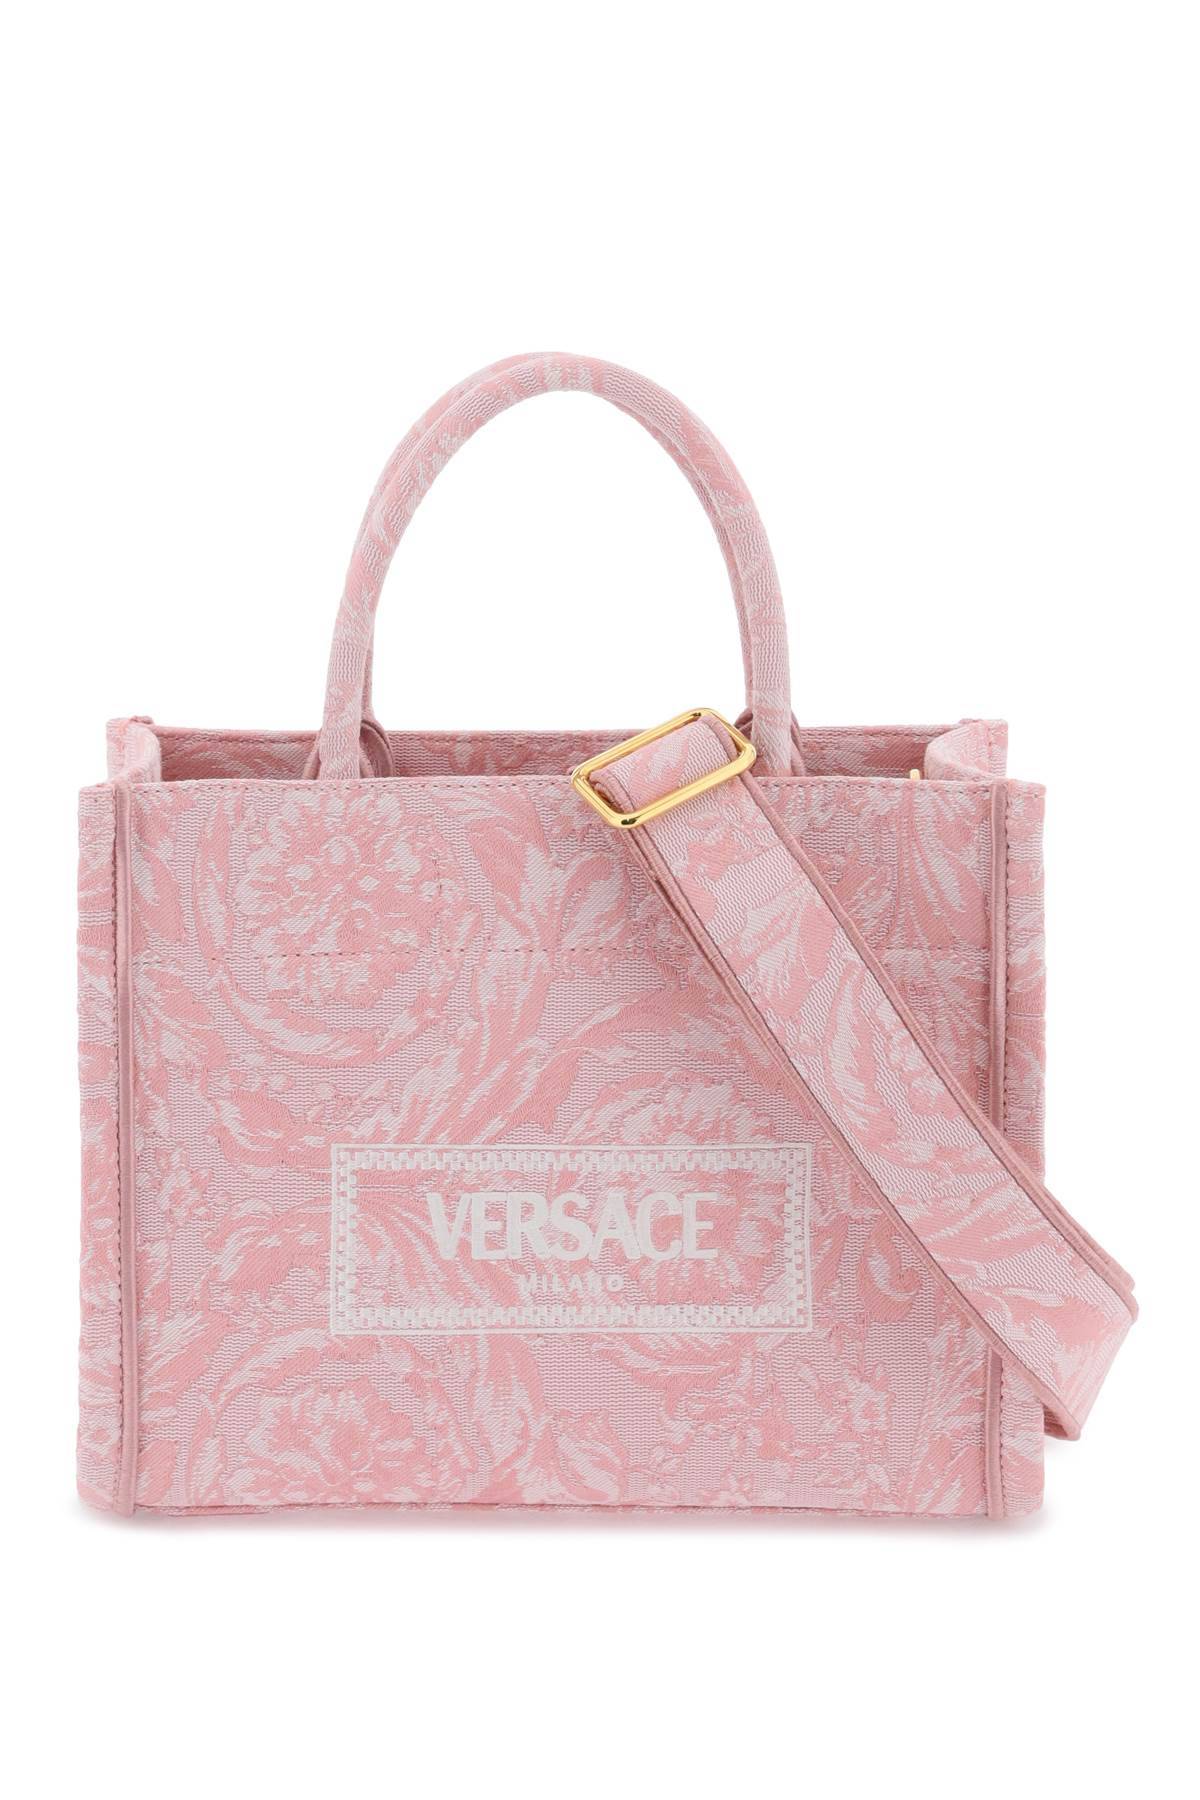 Versace VERSACE athena barocco small tote bag